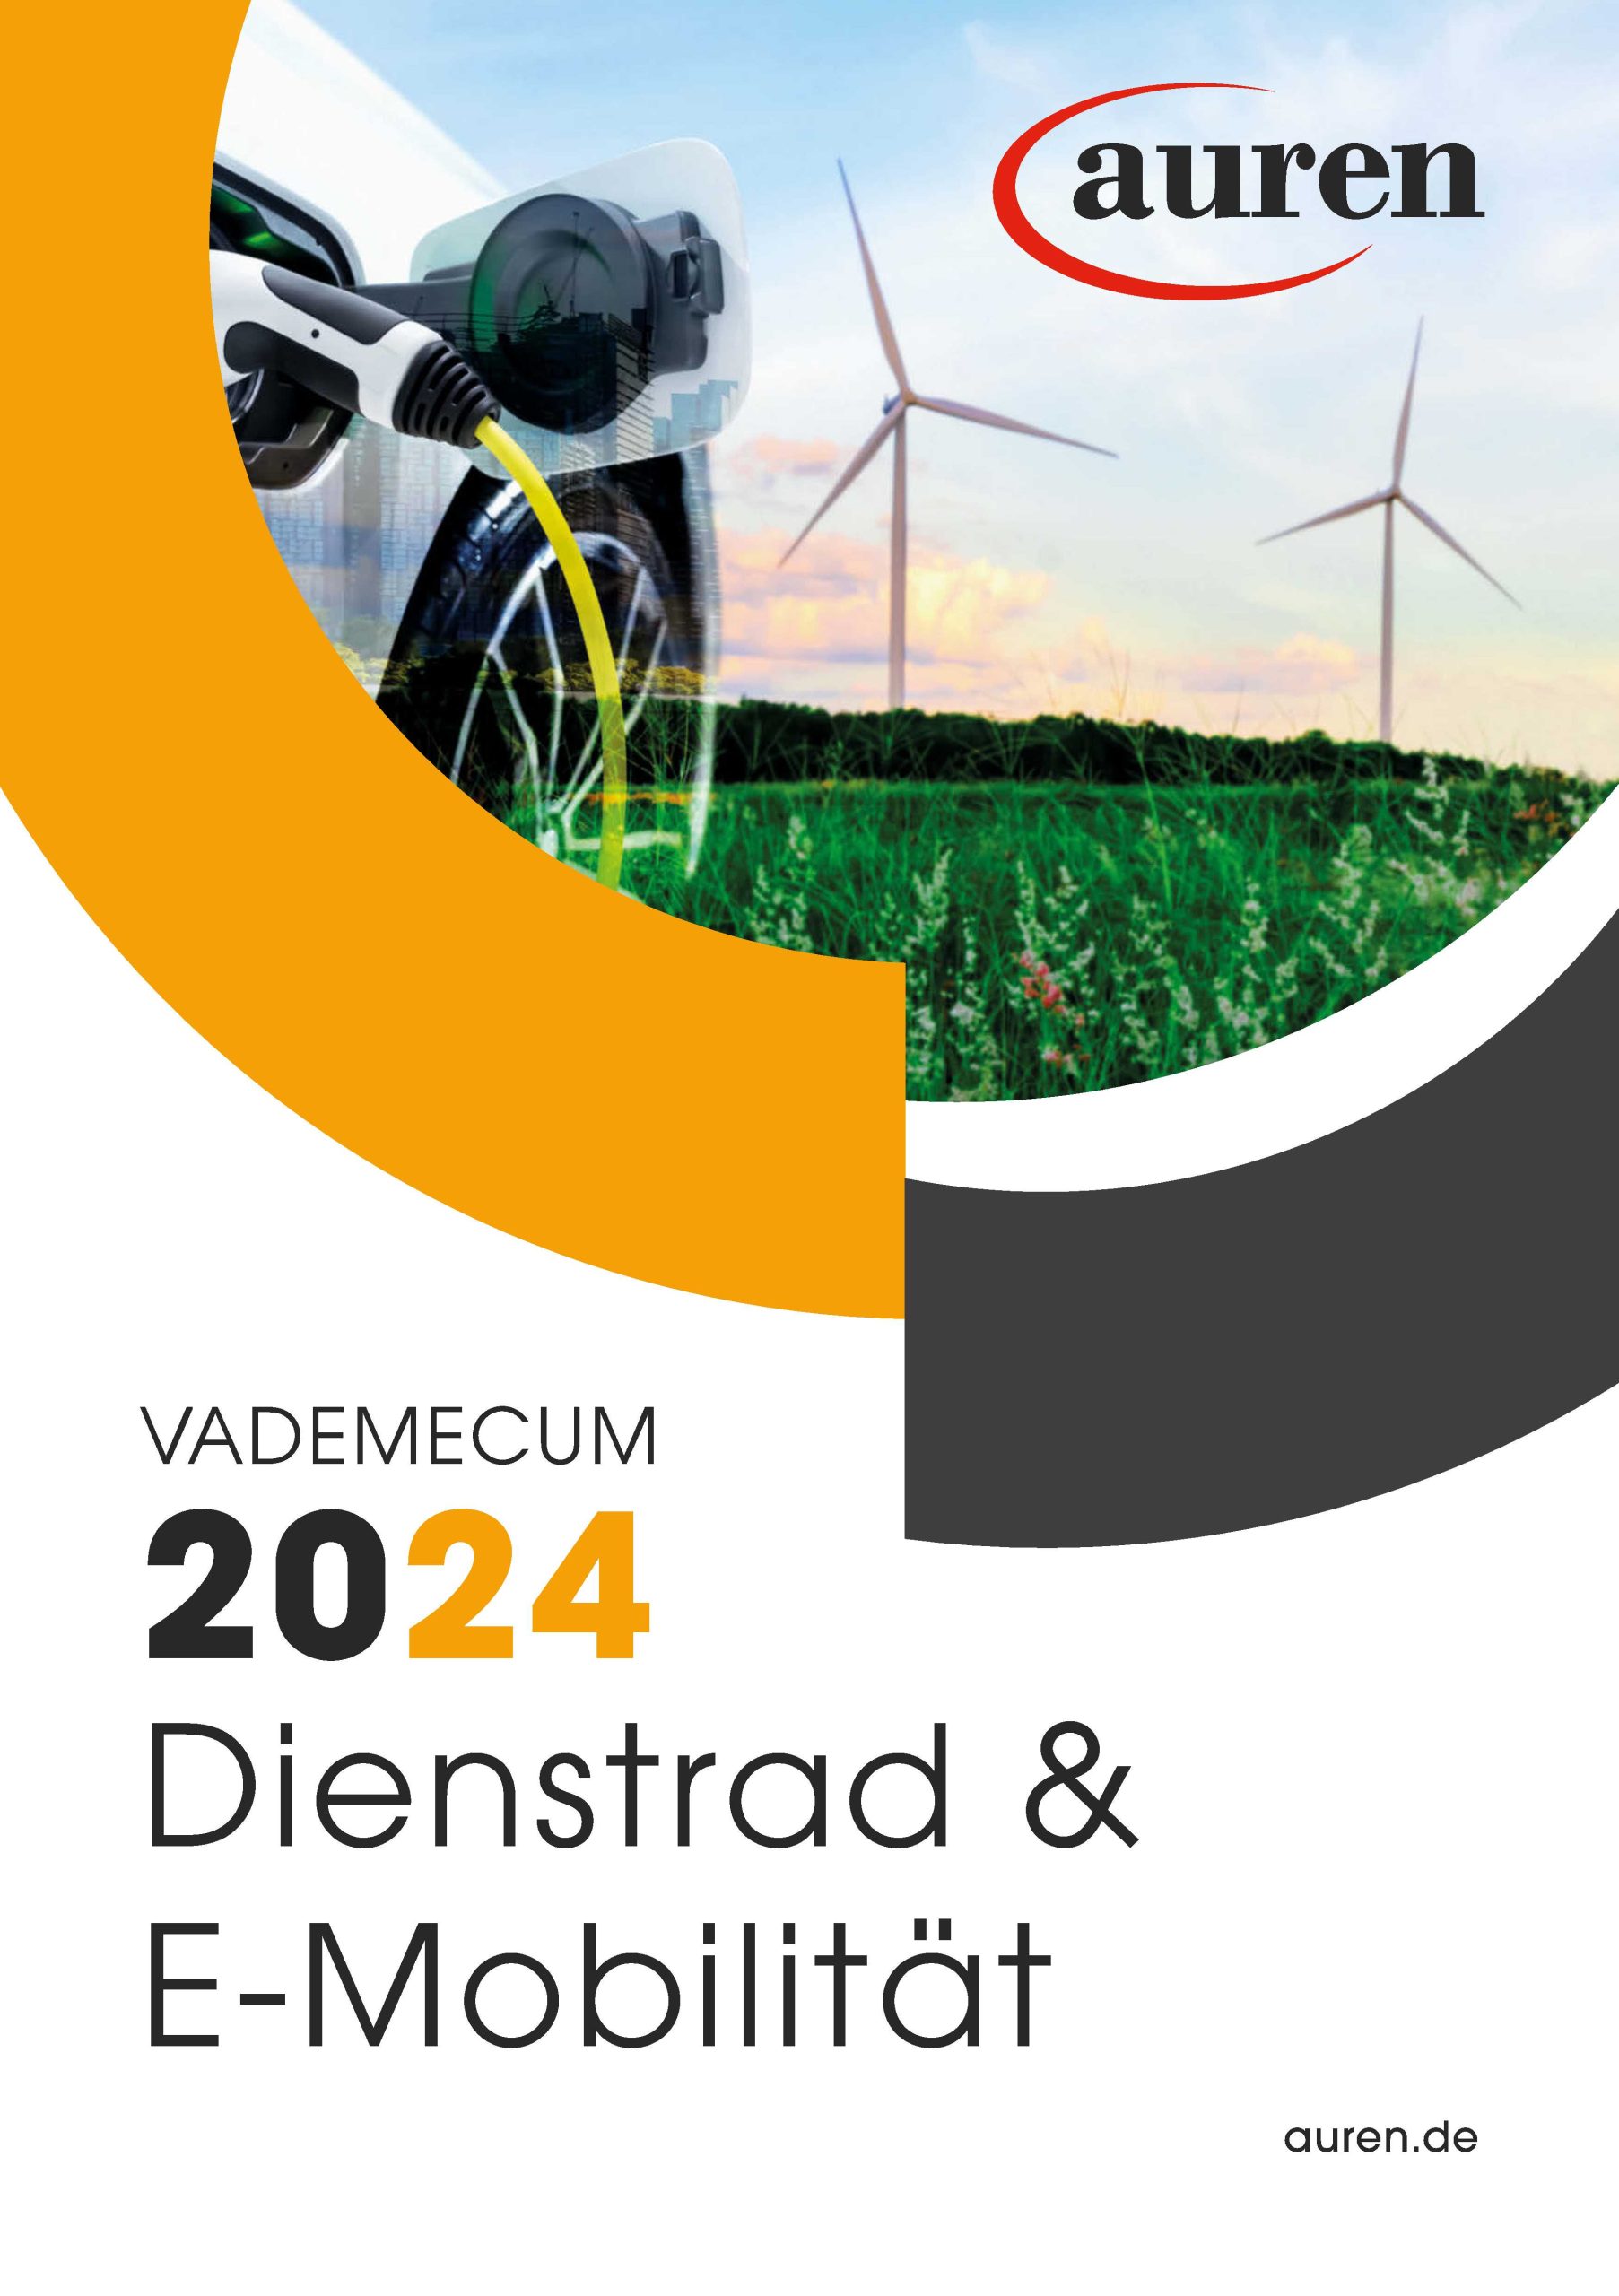 Auren Vademecum Dienstrad und E-Mobilität 2024 Deckblatt